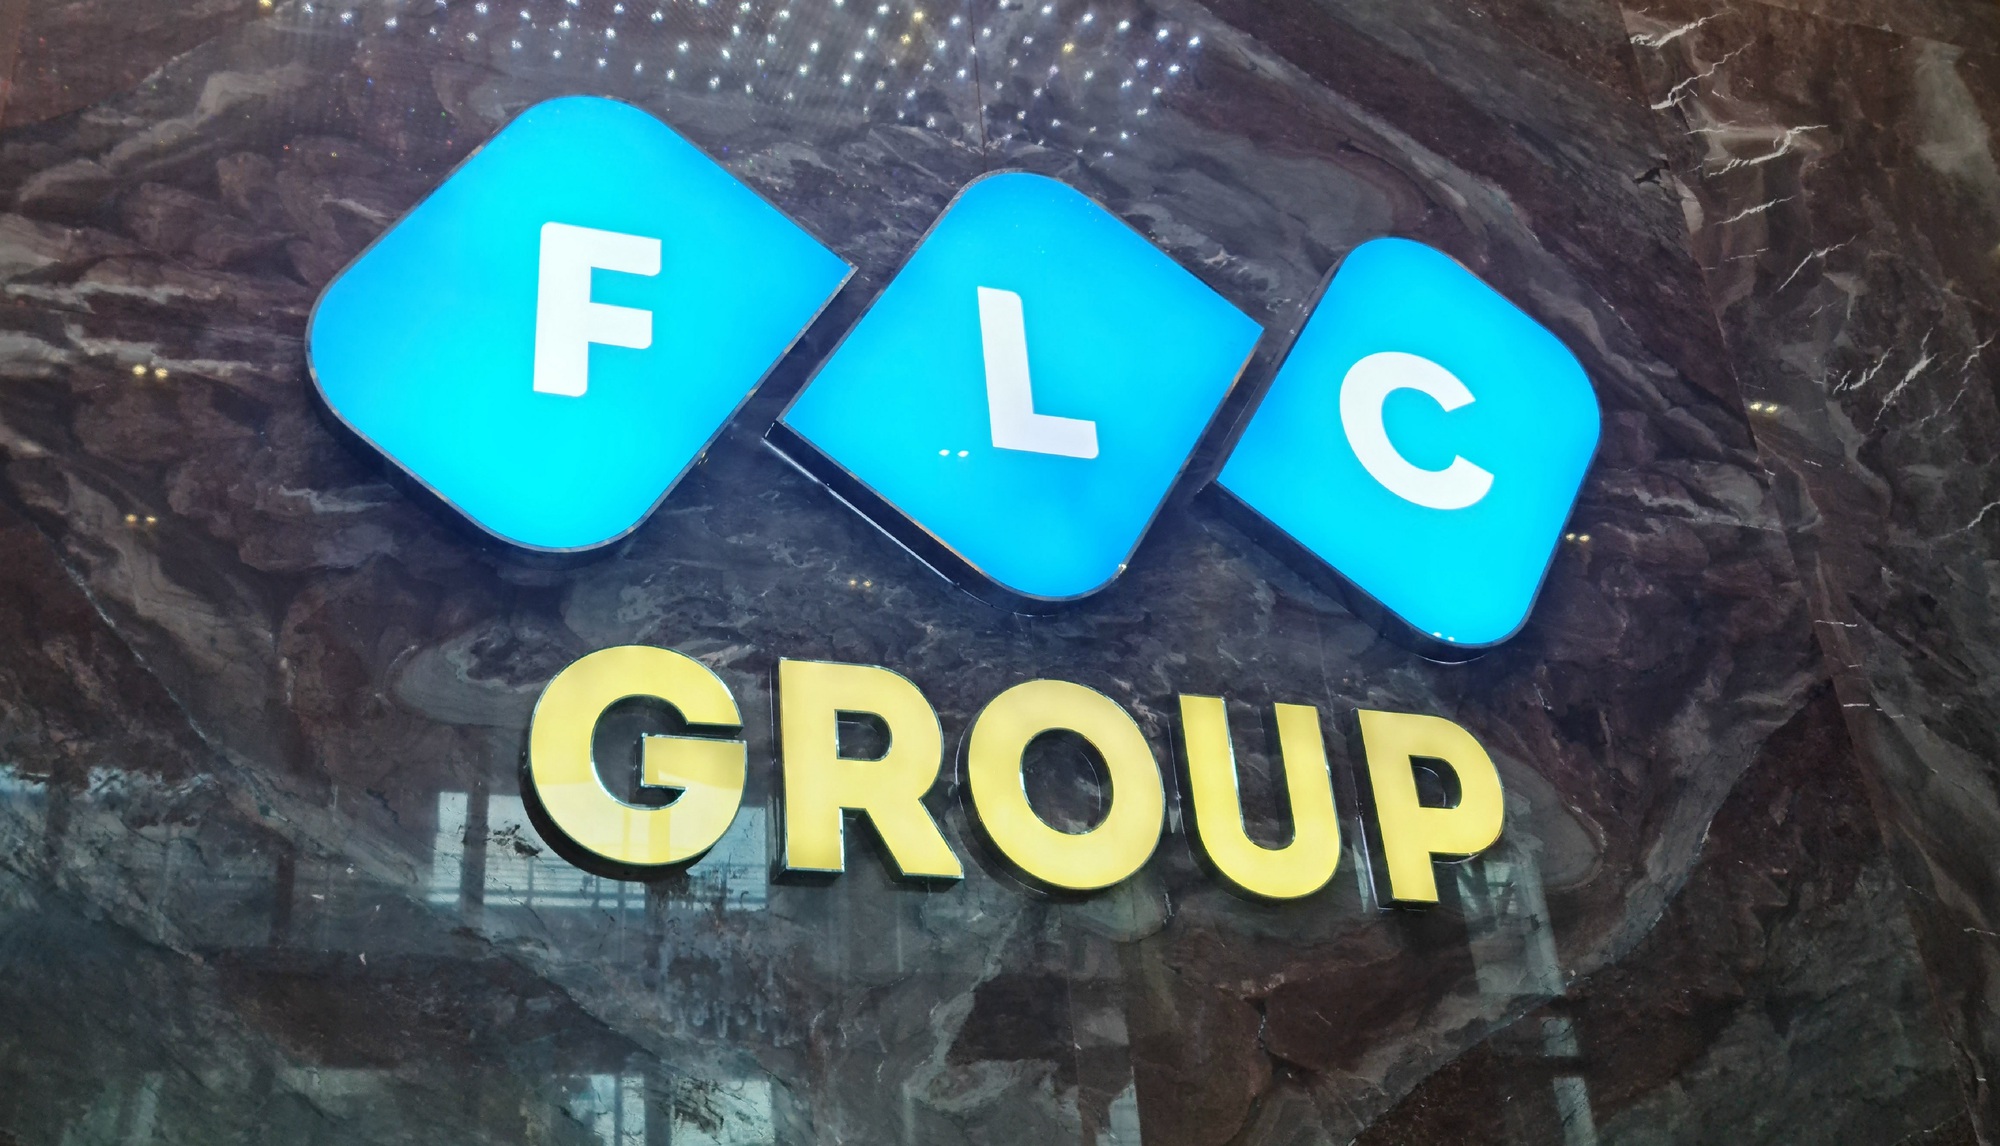 FLC công bố lộ trình tổ chức ĐHCĐ và phát hành BCTC kiểm toán, nhằm khắc phục nguy cơ bị đình chỉ giao dịch - Ảnh 1.